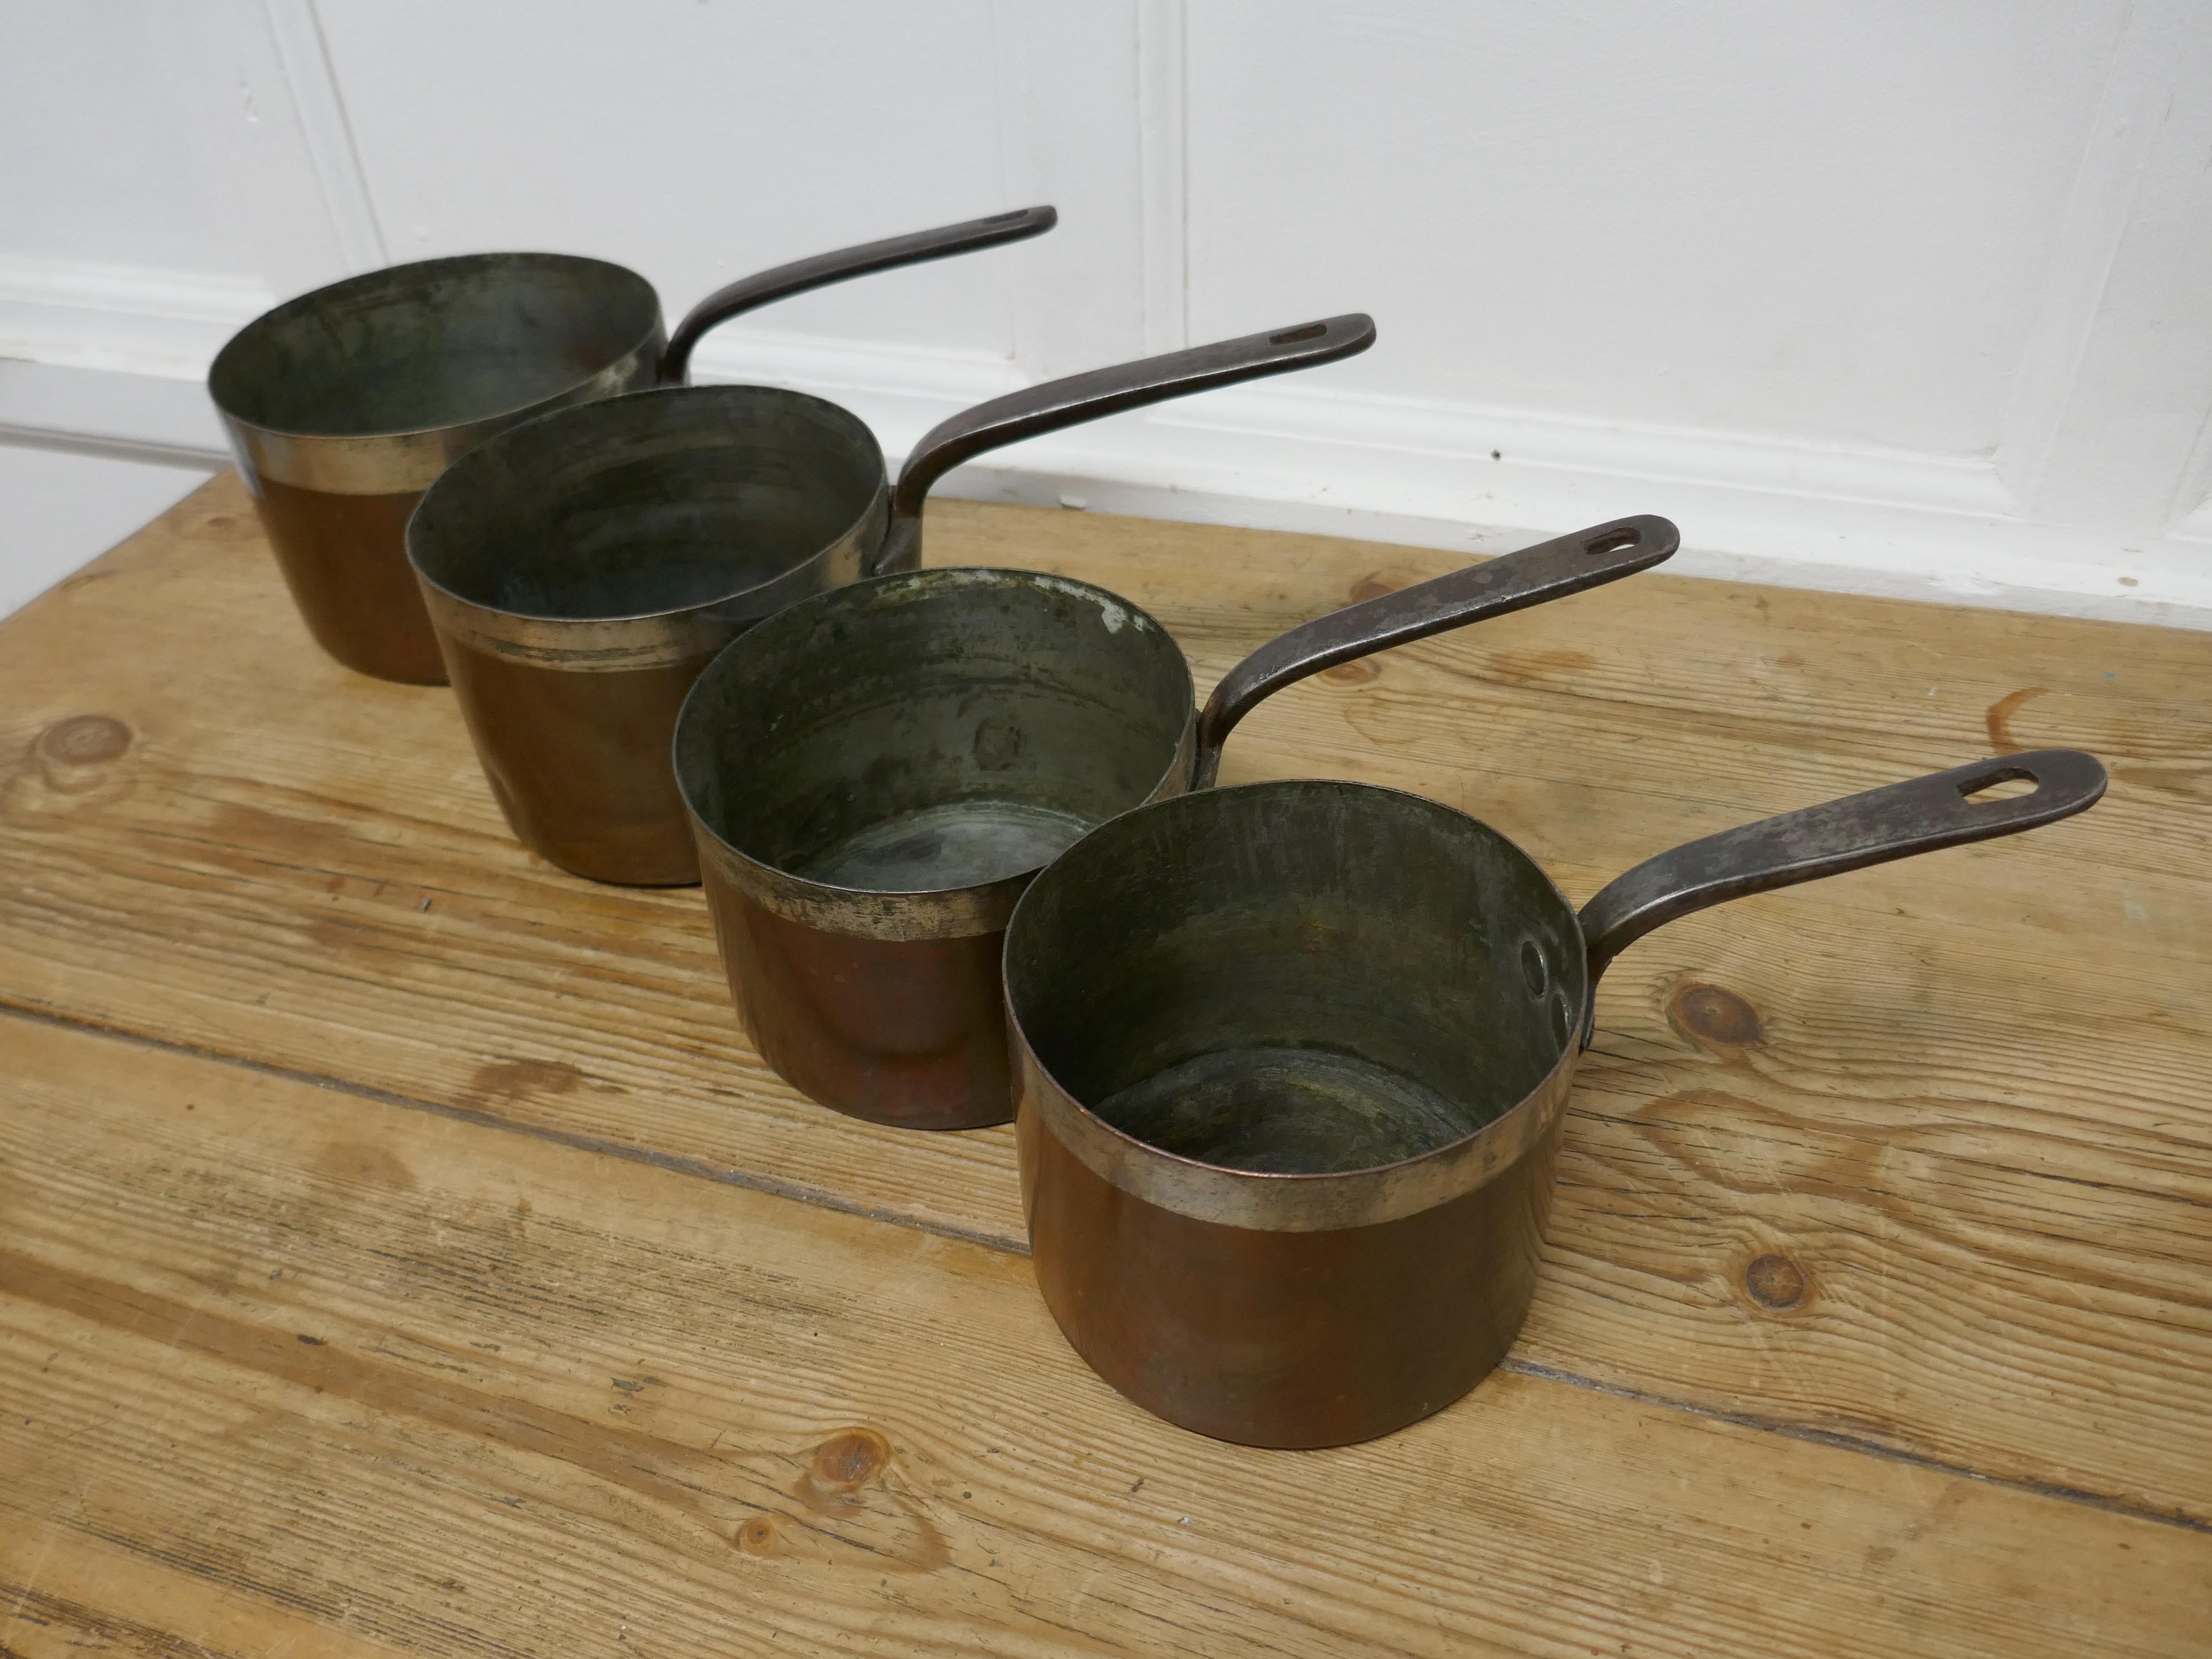 Ensemble de 4 pots en cuivre étamé écossais du 19ème siècle par James Grayson


Ensemble de 4 pots en cuivre écossais du 19ème siècle par James Grayson d'Edimbourg, les pots sont étamés à l'intérieur et autour du bord supérieur, ils ont des